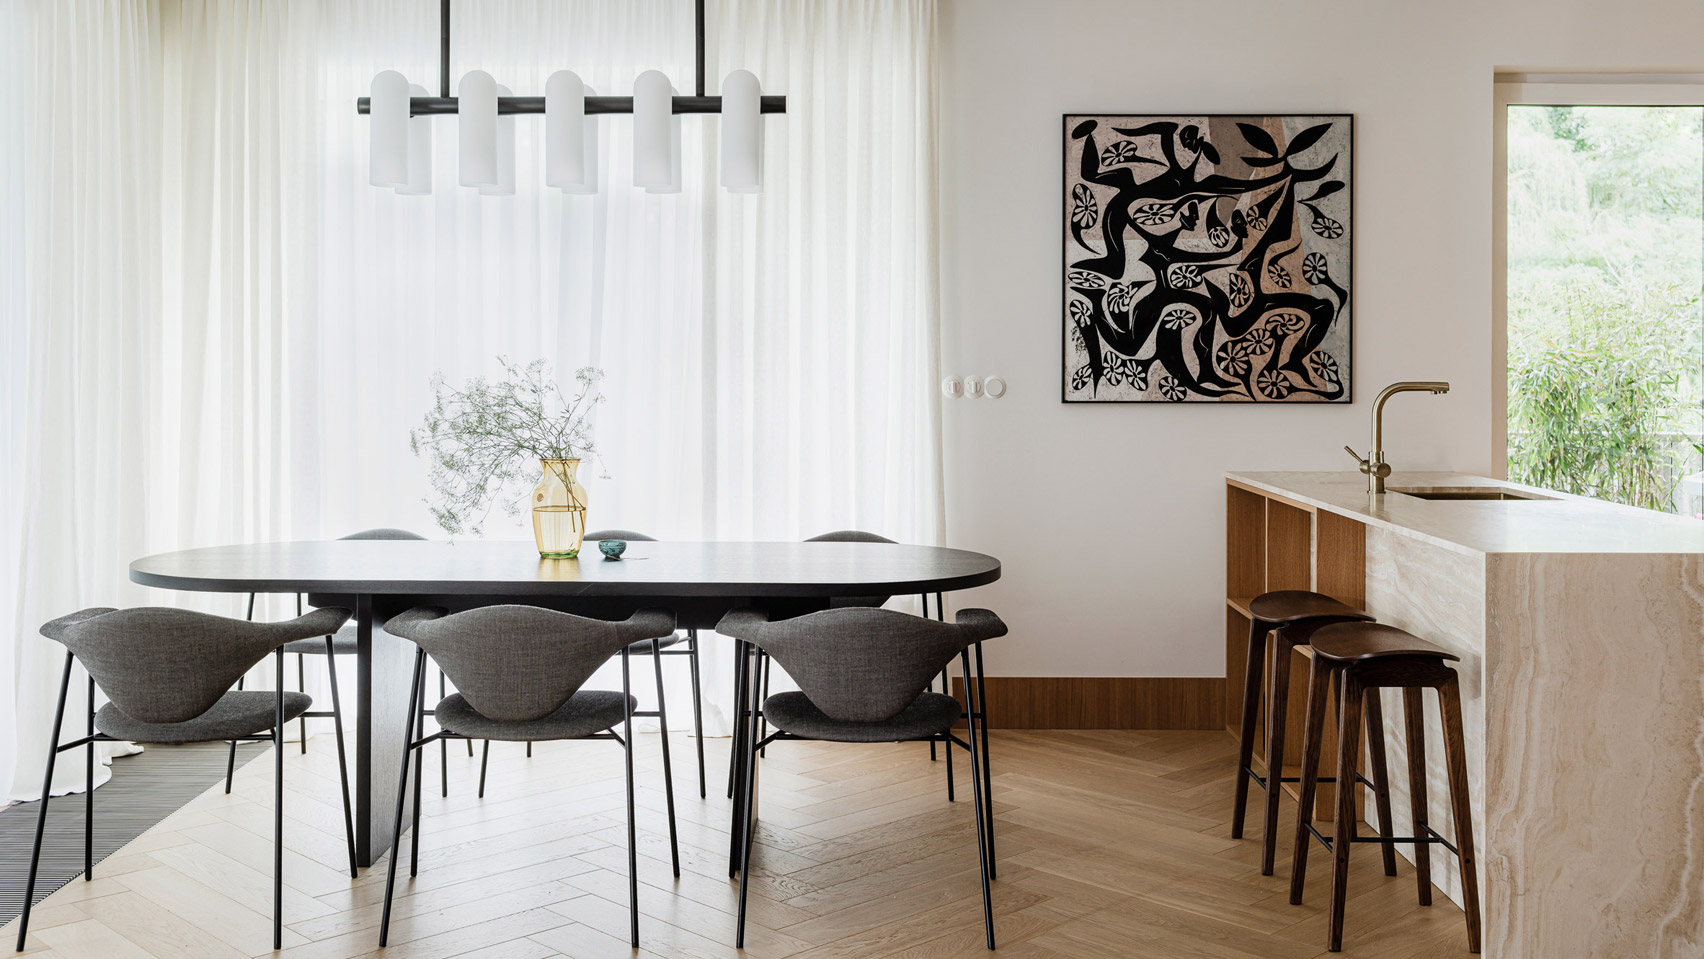 El apartamento Botaniczna está ubicado en Poznan, Polonia, diseñado por Agnieszka Owsiany Studio